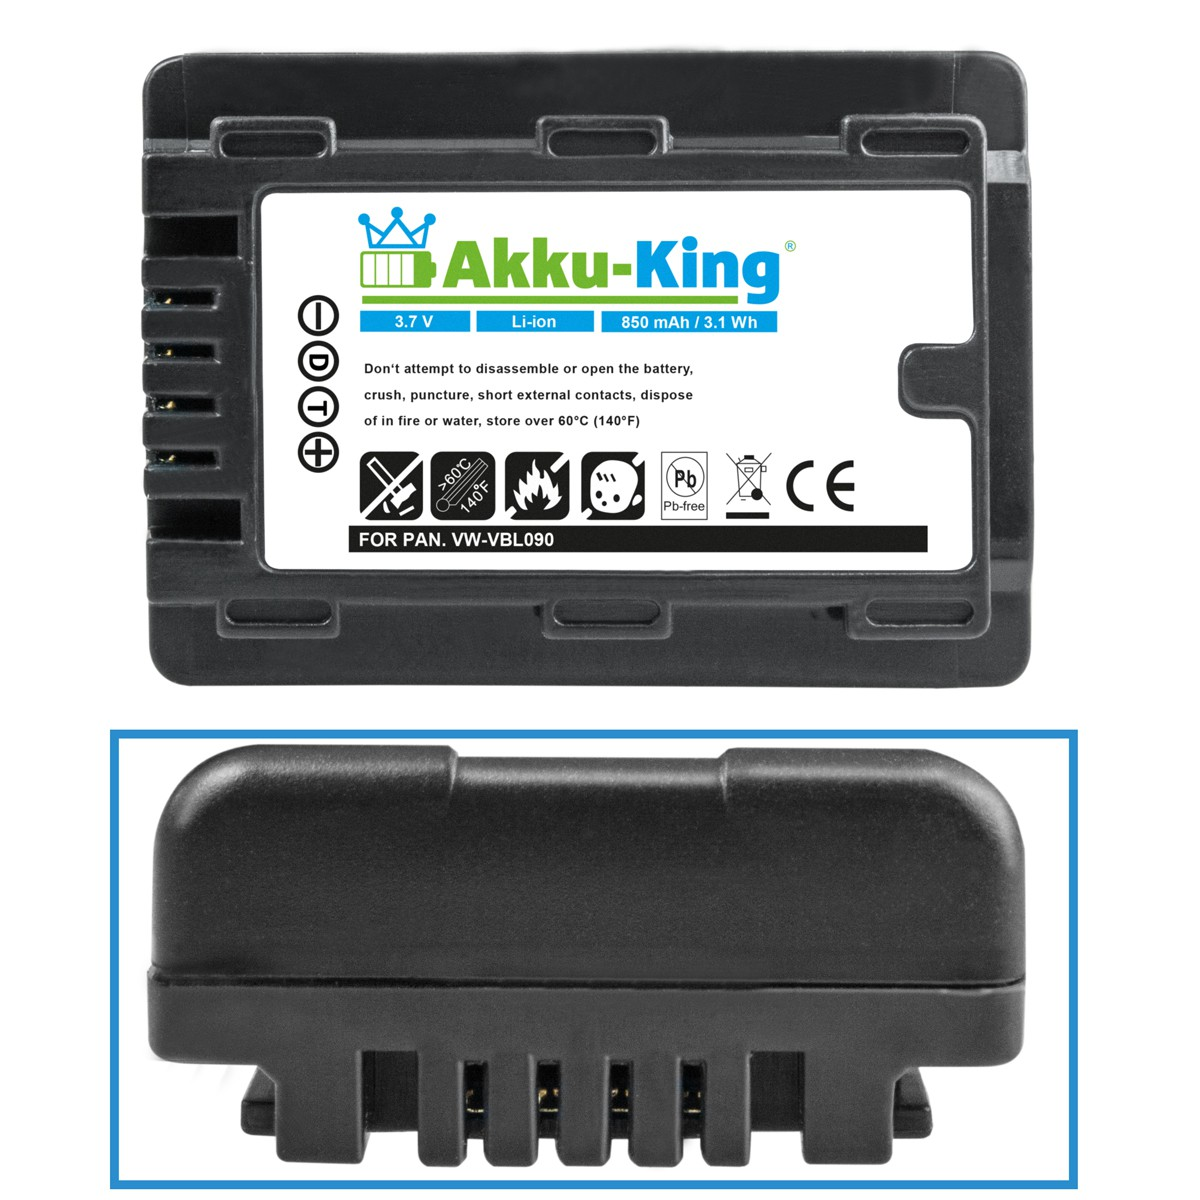 3.7 kompatibel Panasonic Akku AKKU-KING VW-VBL090 Li-Ion Volt, 850mAh Kamera-Akku, mit